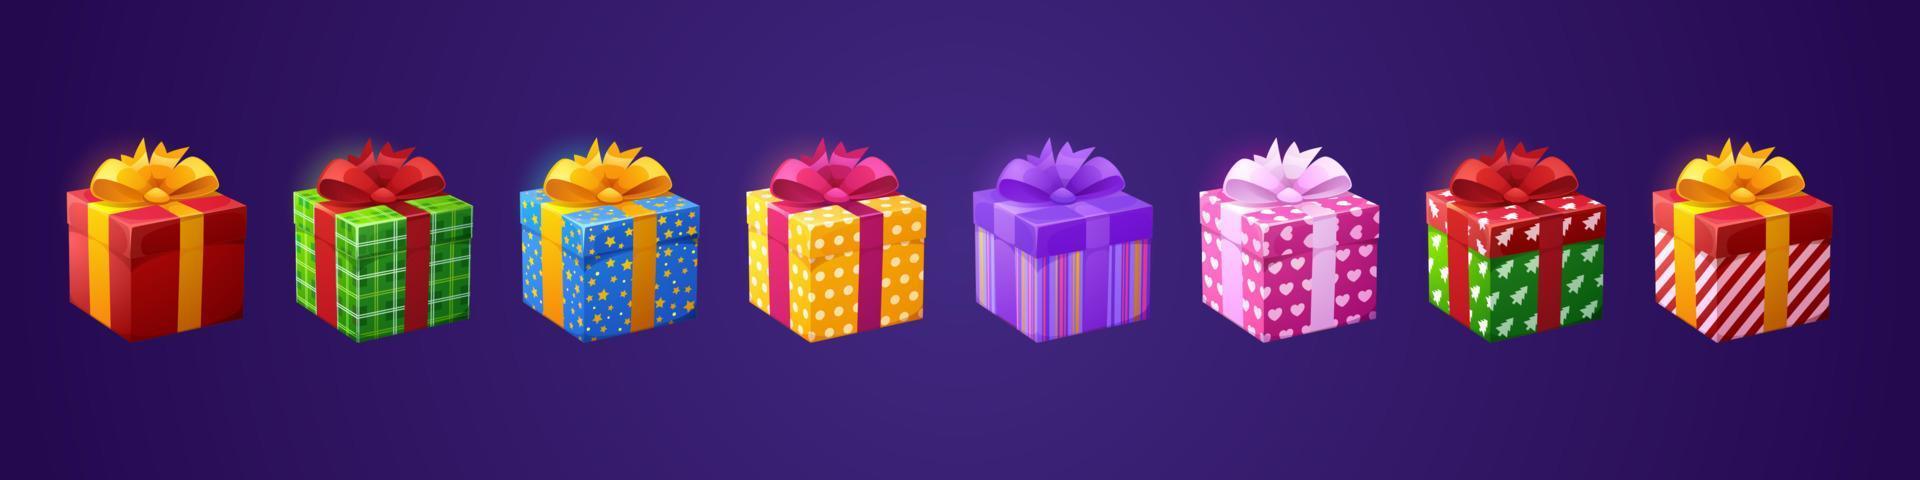 cajas de regalo regalos de cumpleaños 3d en papel y lazos vector